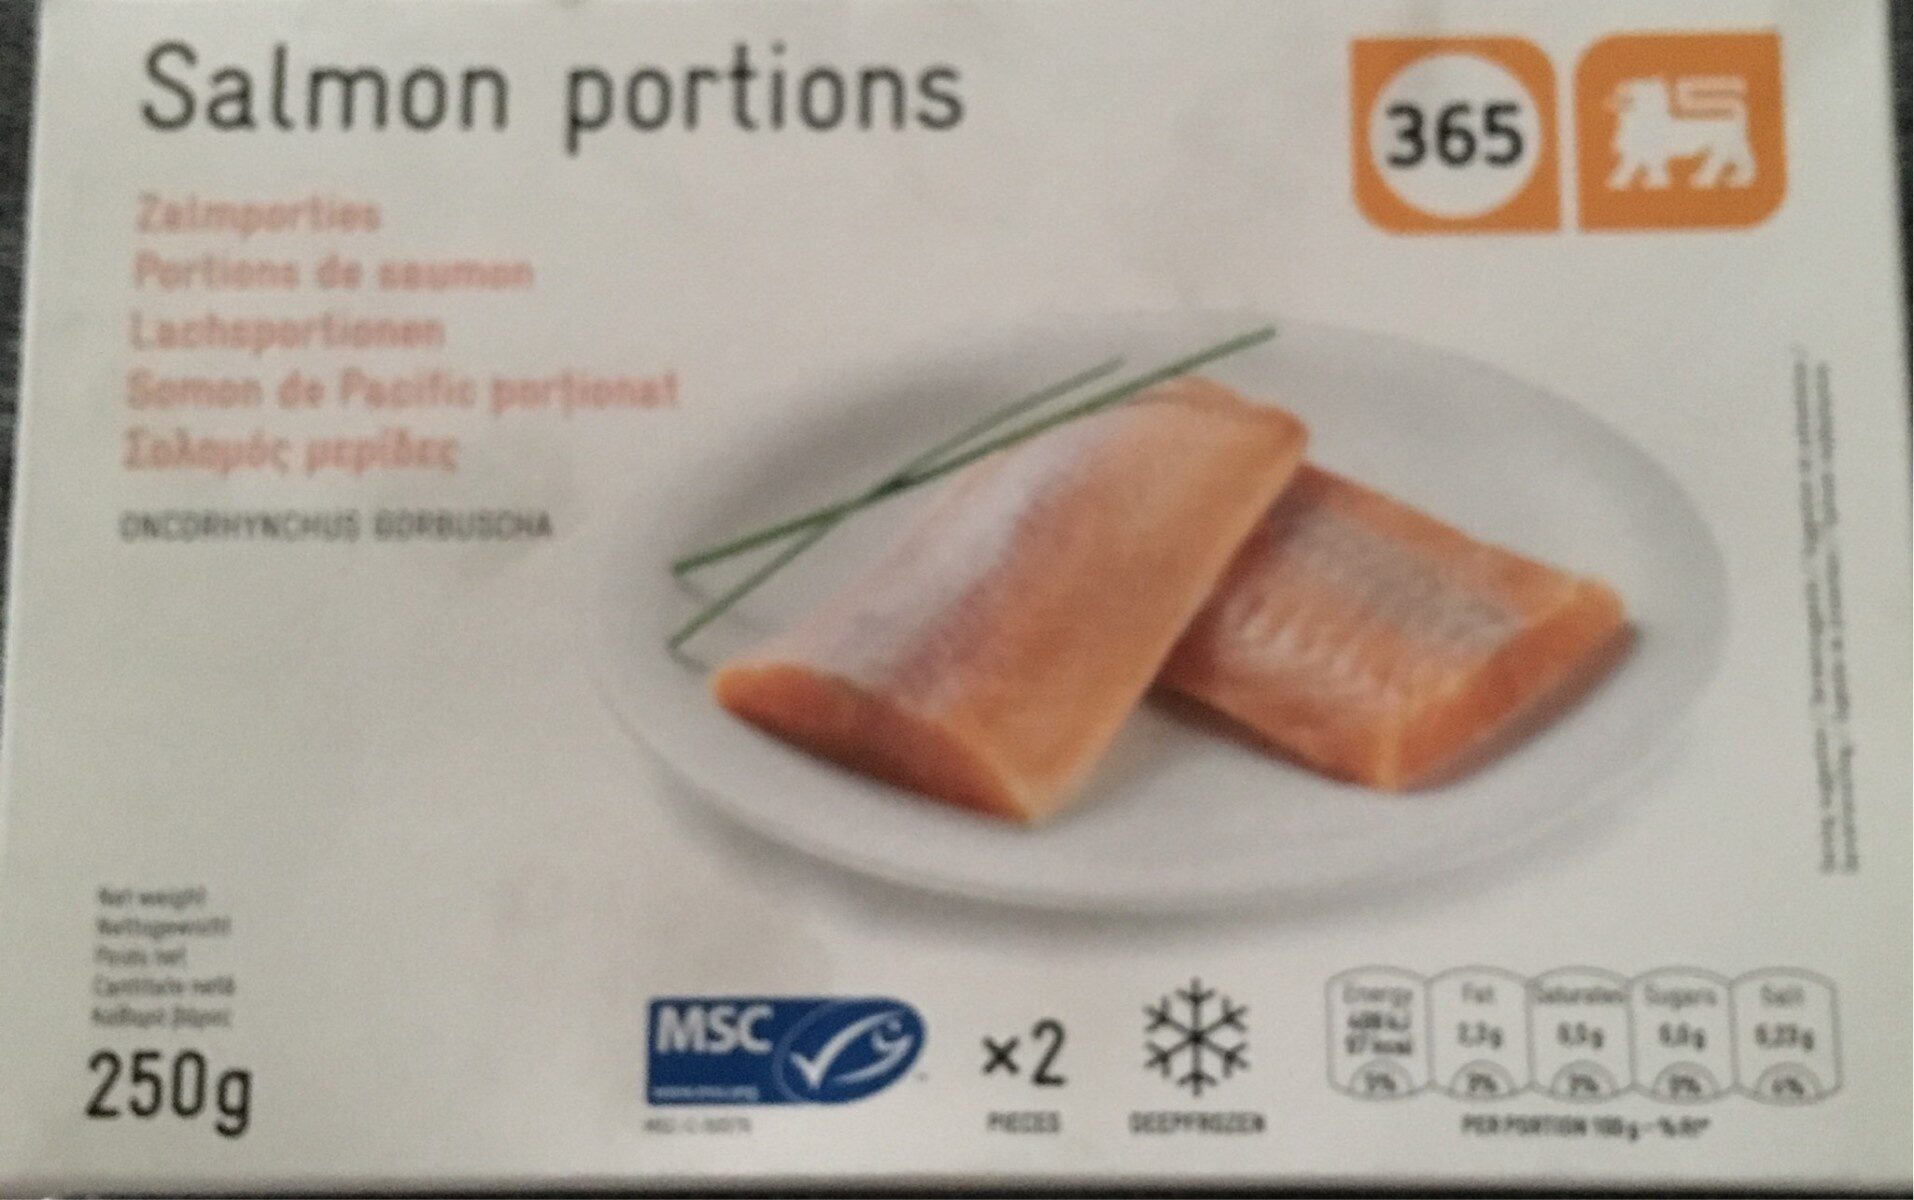 Portions de saumon - Product - fr